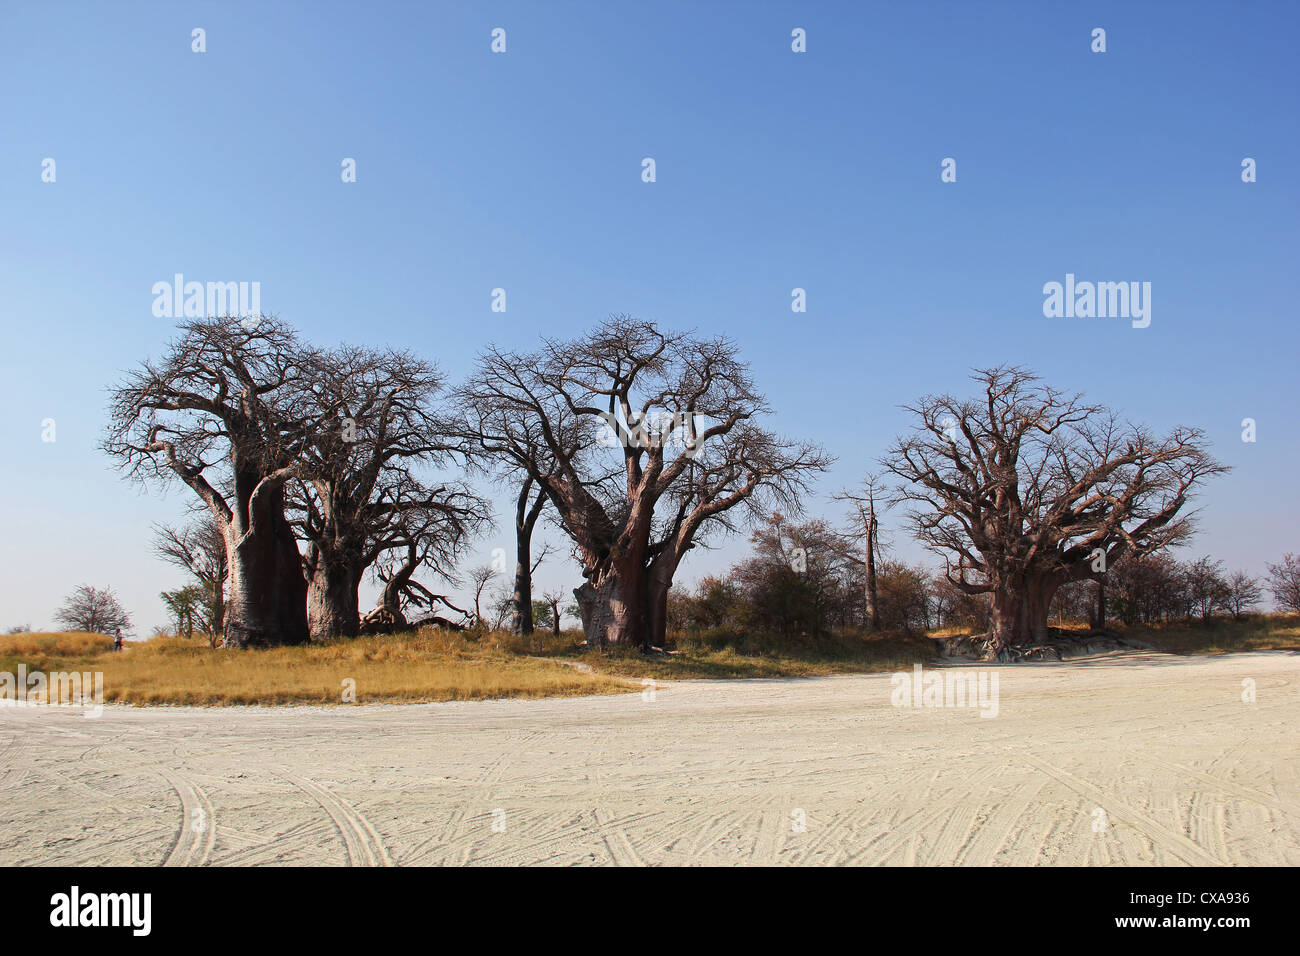 Los baobabs del baine botsuana Foto de stock